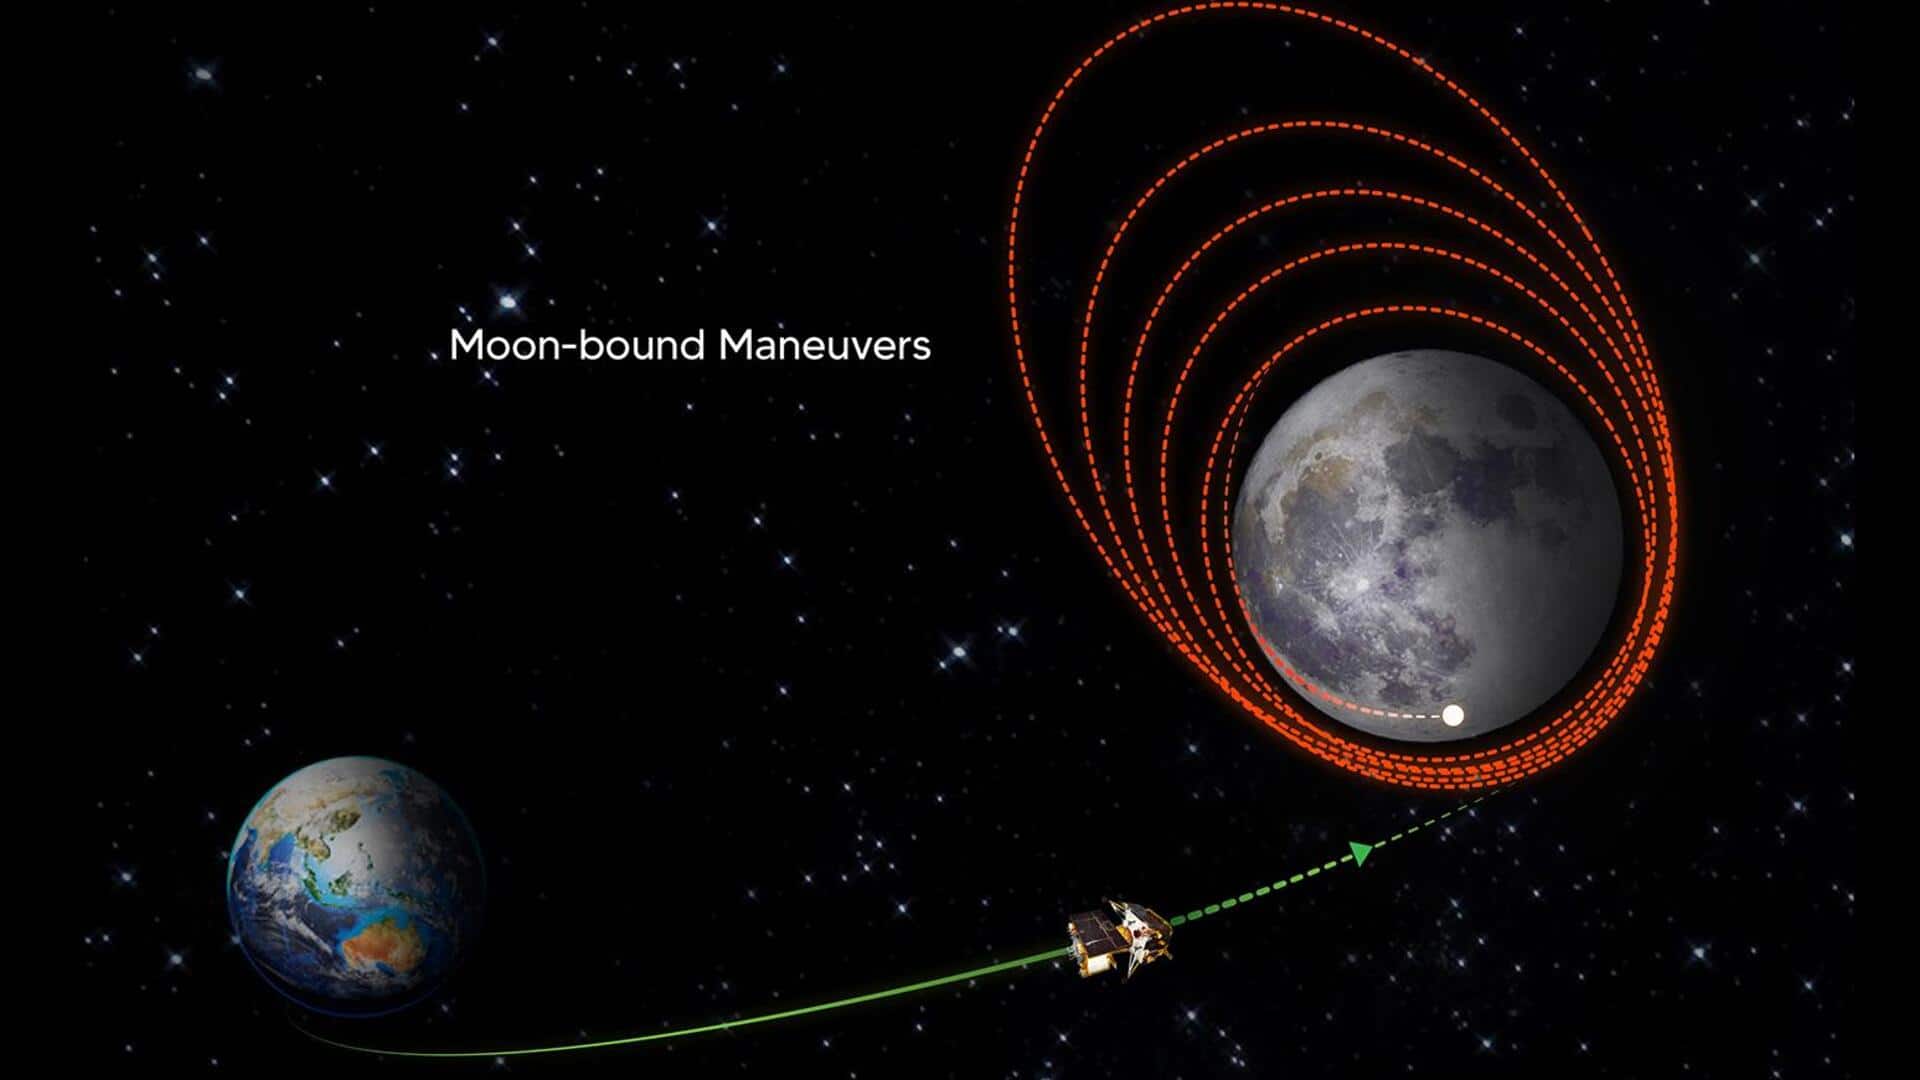 चंद्रयान-3 कल पृथ्वी के चक्कर लगाना छोड़ चंद्रमा की तरफ बढ़ेगा, ISRO ने दी जानकारी